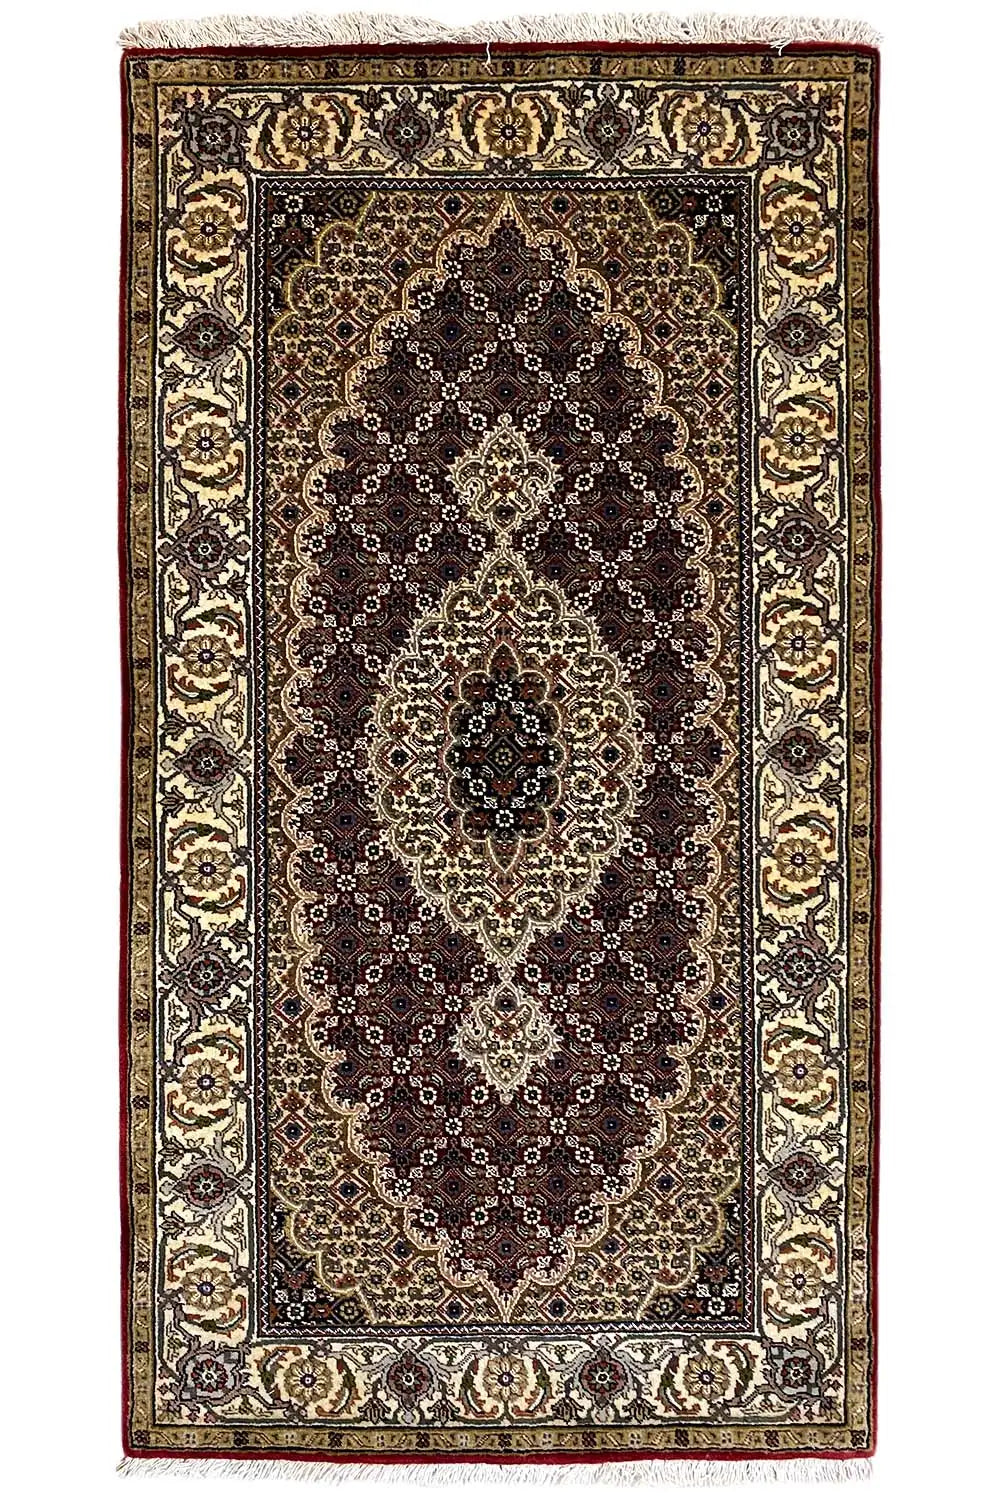 Täbriz - Mahi (145x76cm) - German Carpet Shop